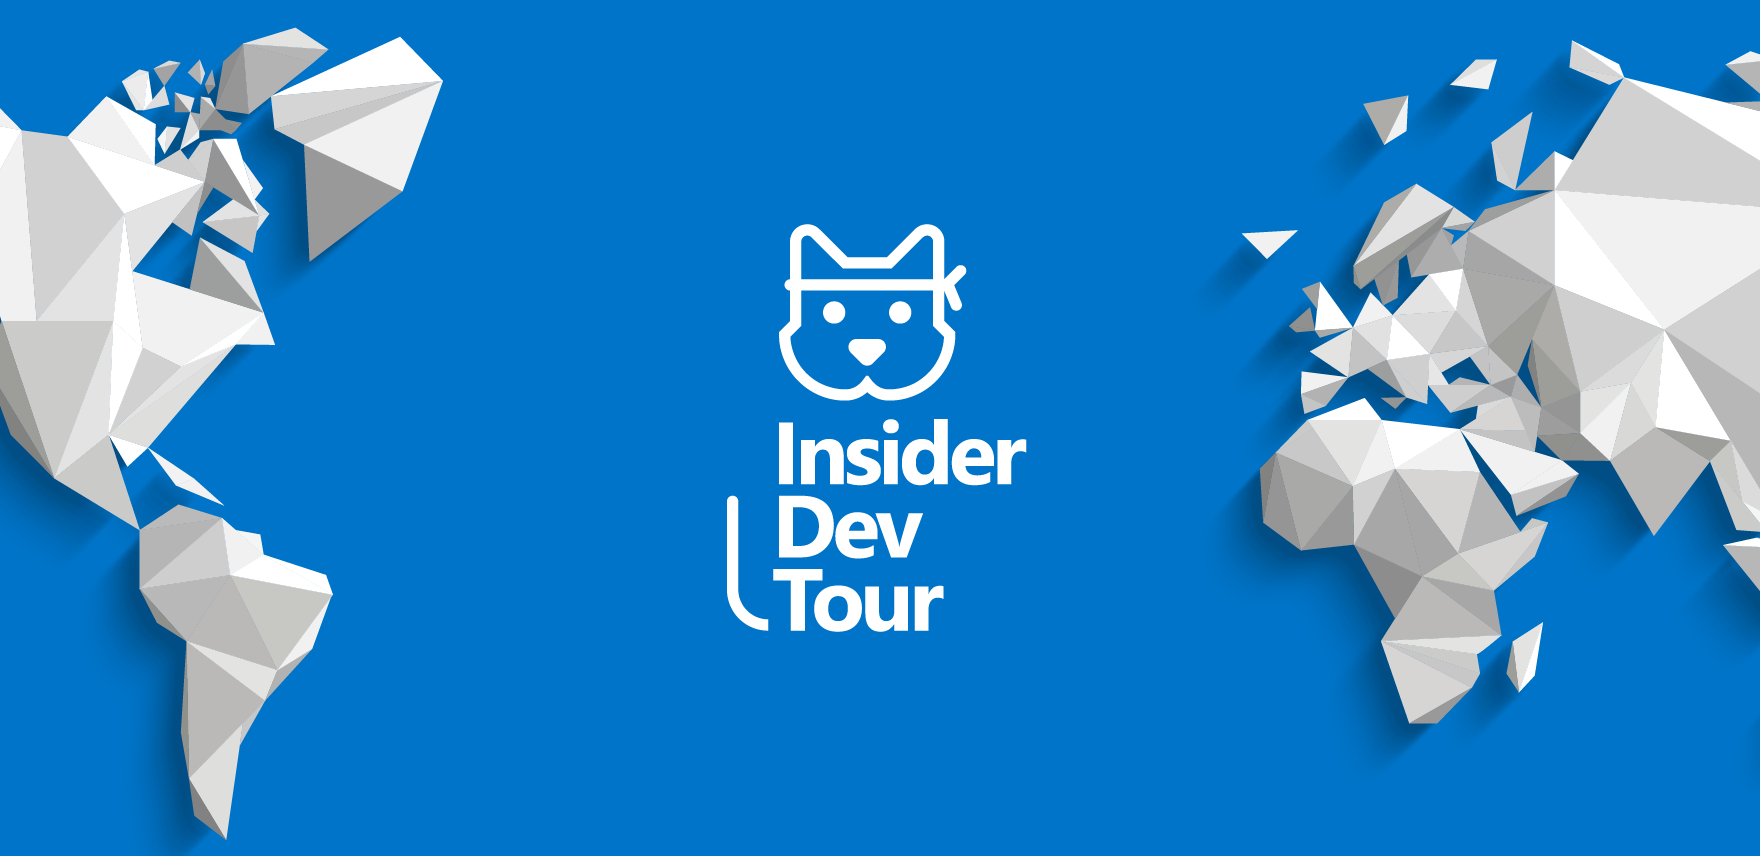 Insider Dev Tour banner